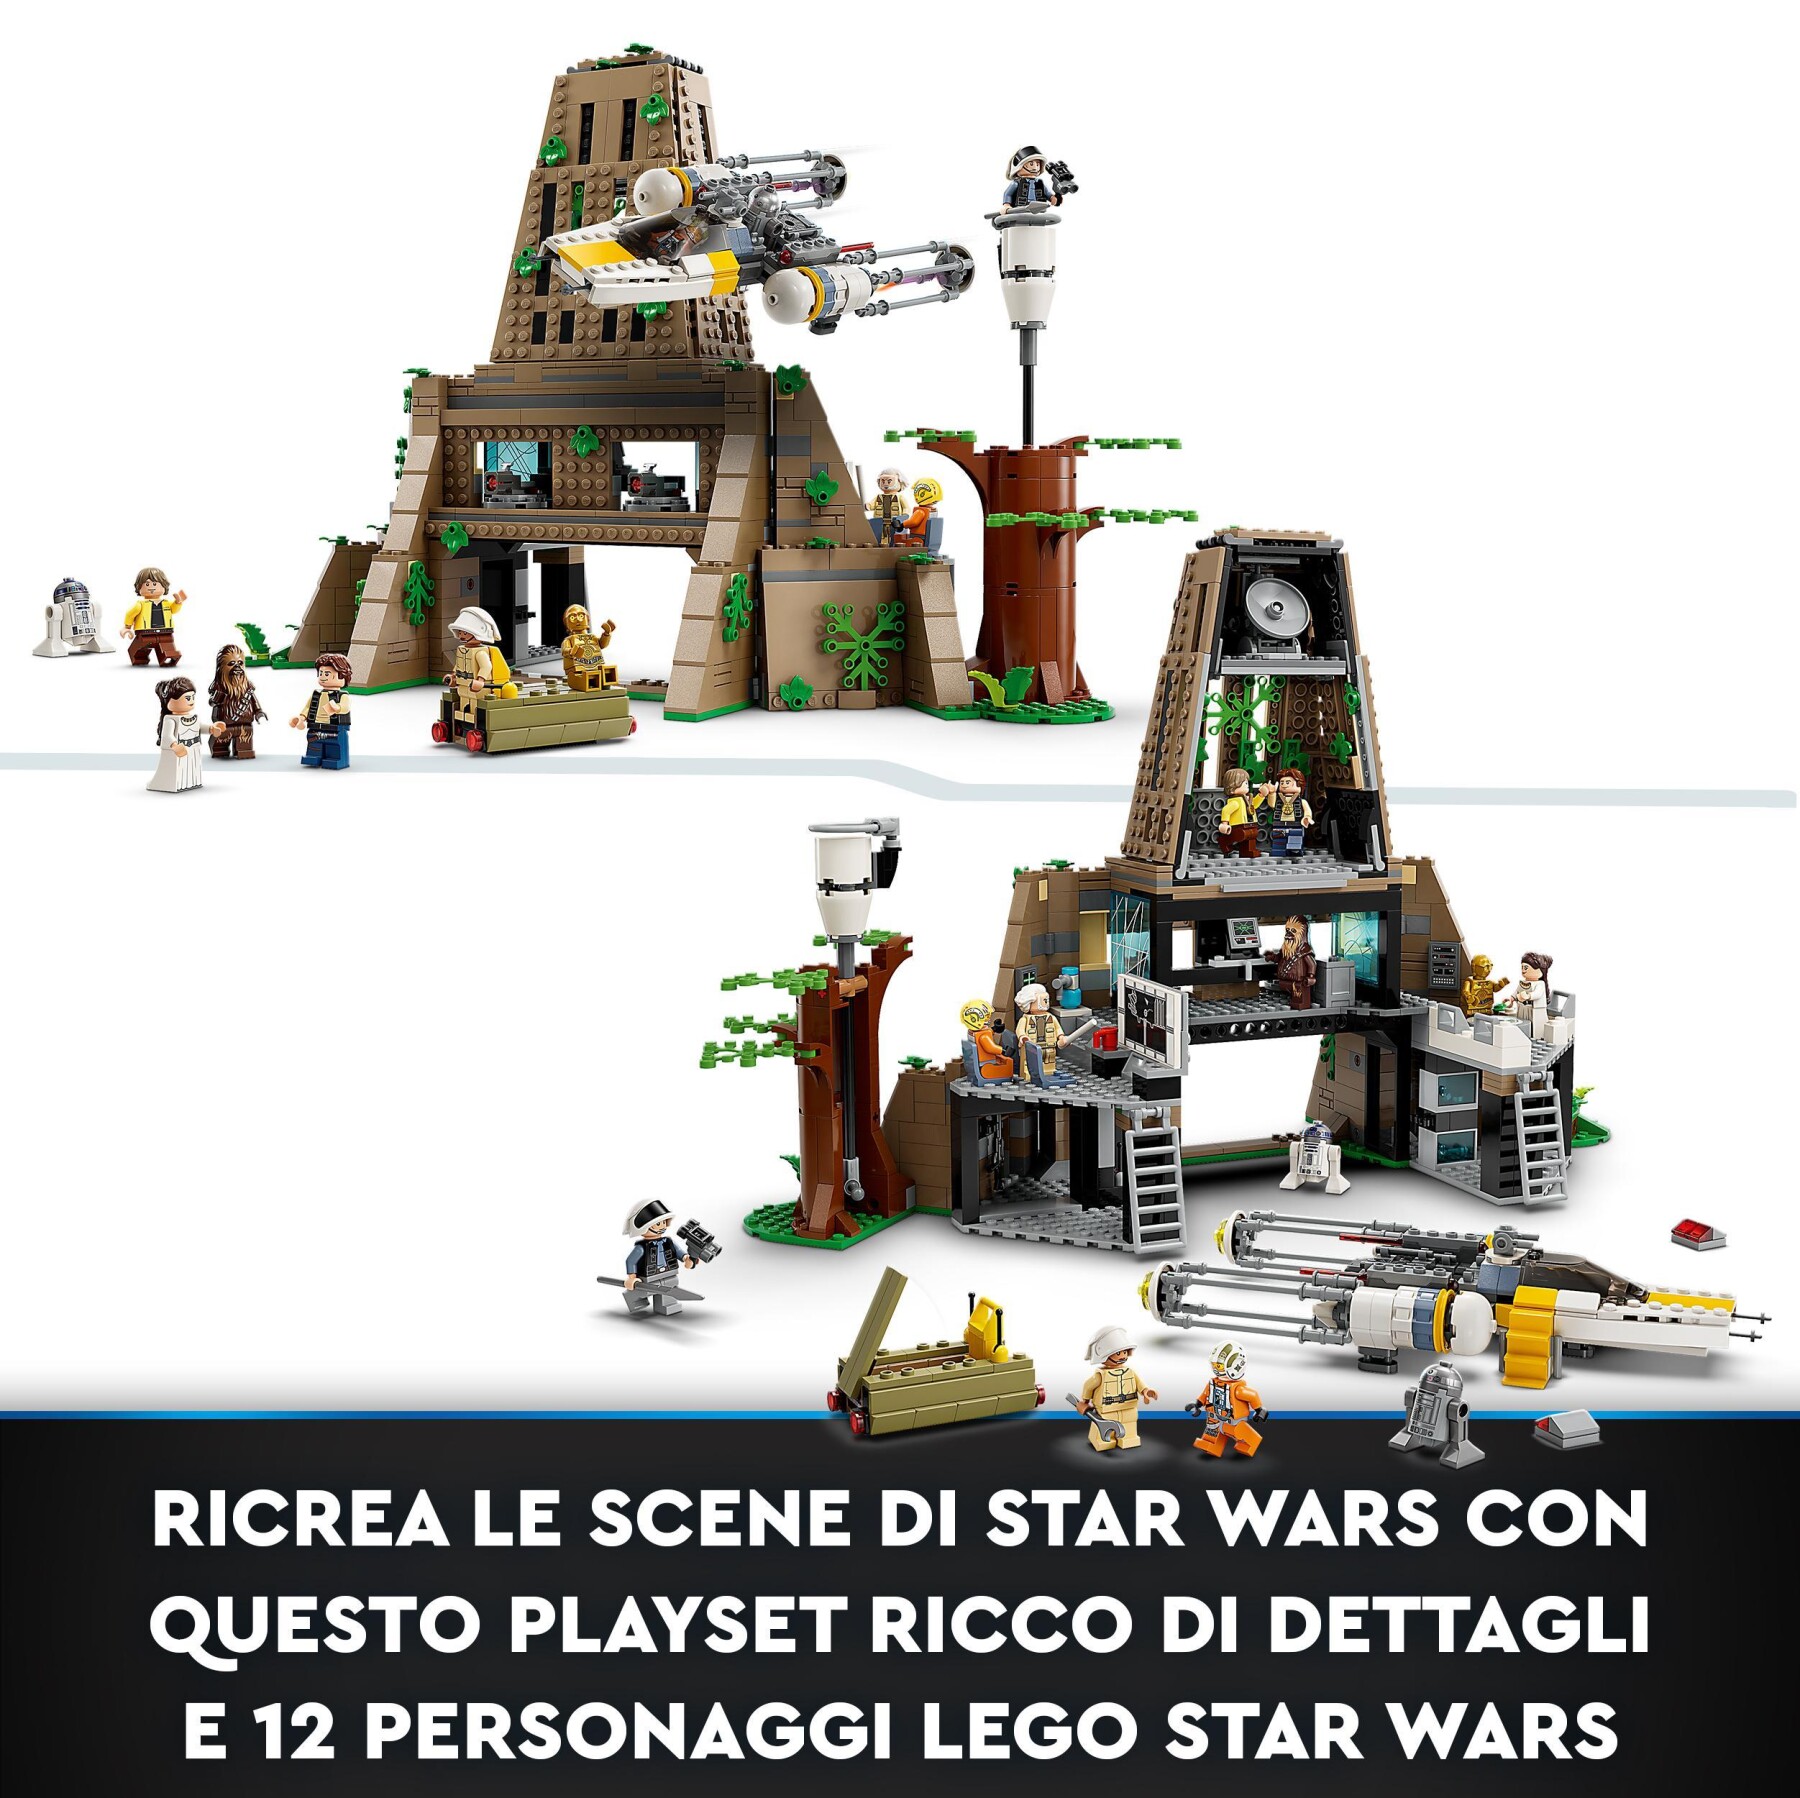 Lego 75365 star wars: a new hope base ribelle su yavin 4 con 10 minifigure, 2 droidi, starfighter y-wing e sala comando - LEGO® Star Wars™, Star Wars